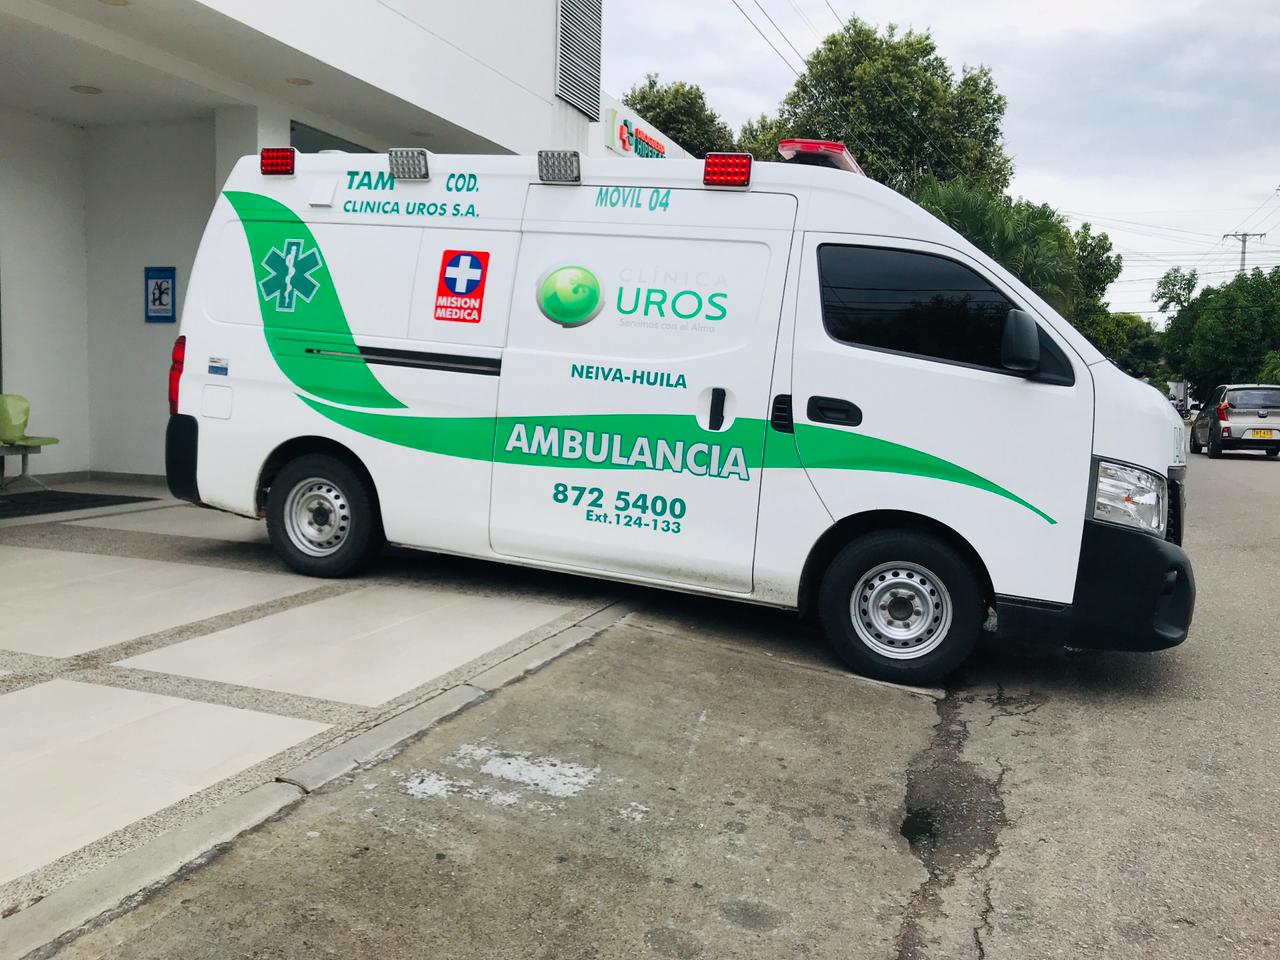 Según Urmédica, las ambulancias de su propiedad cumplen con todos los requisitos para poder operar.